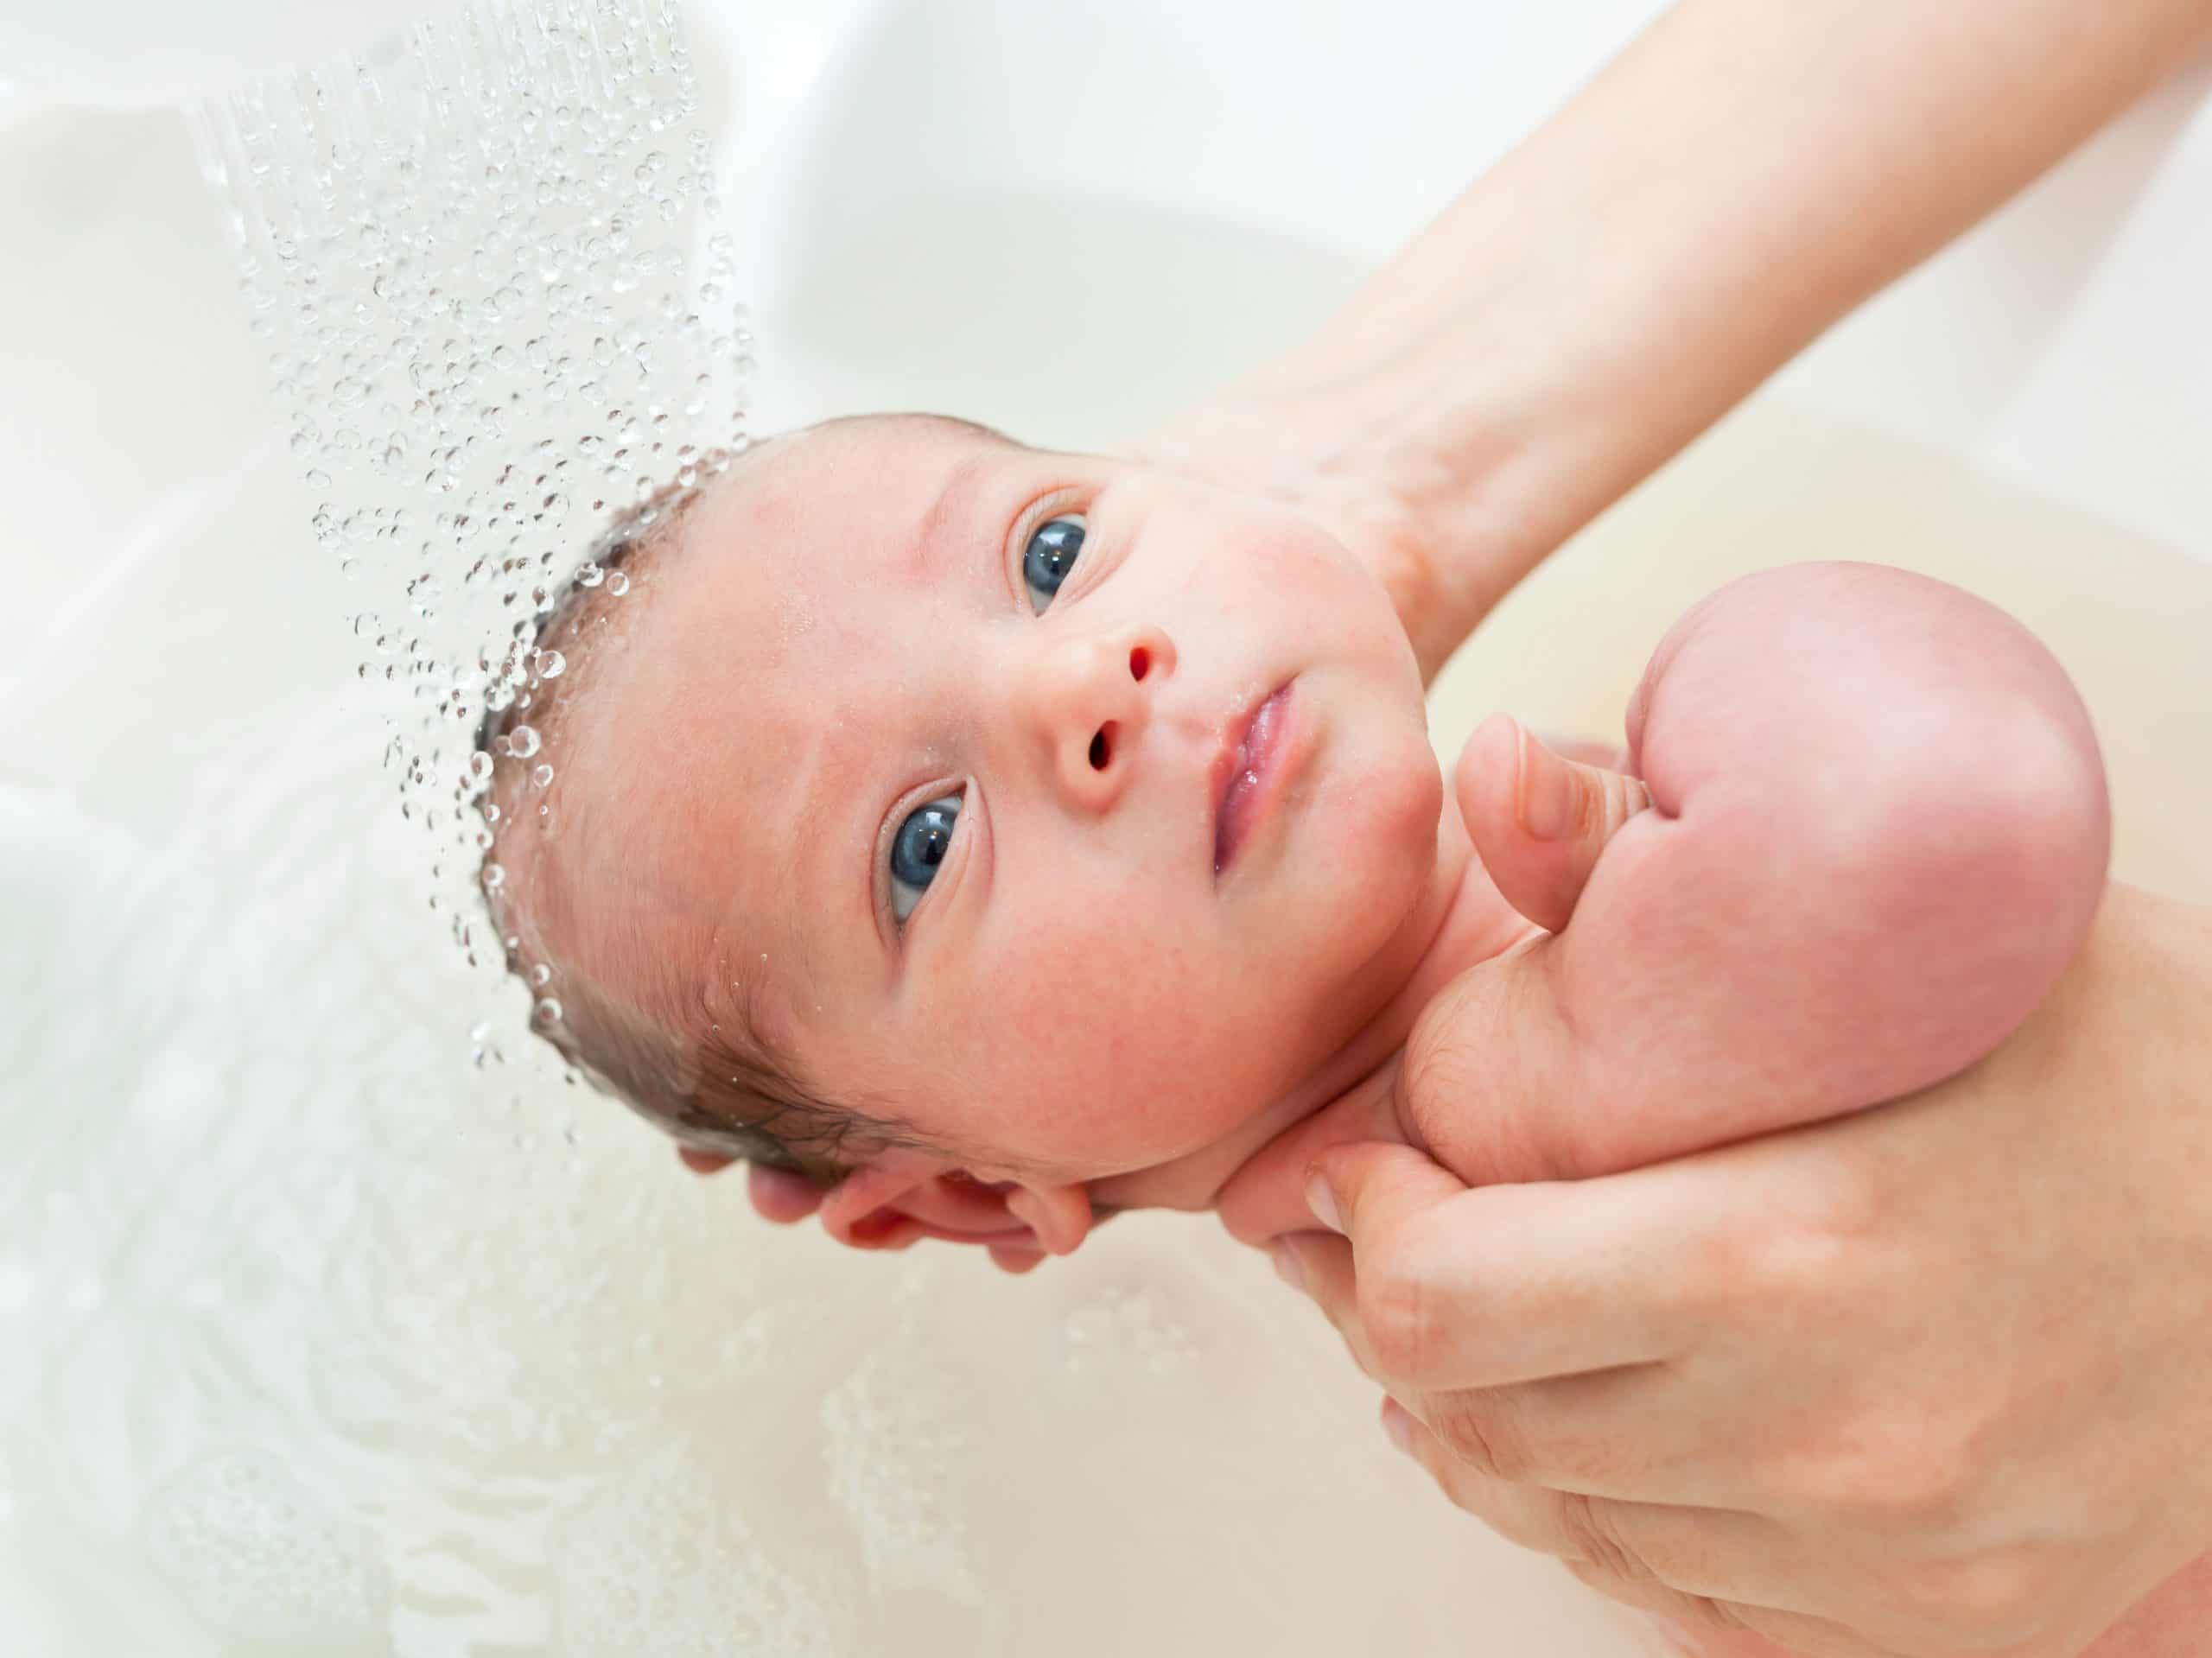 how to bathe a newborn